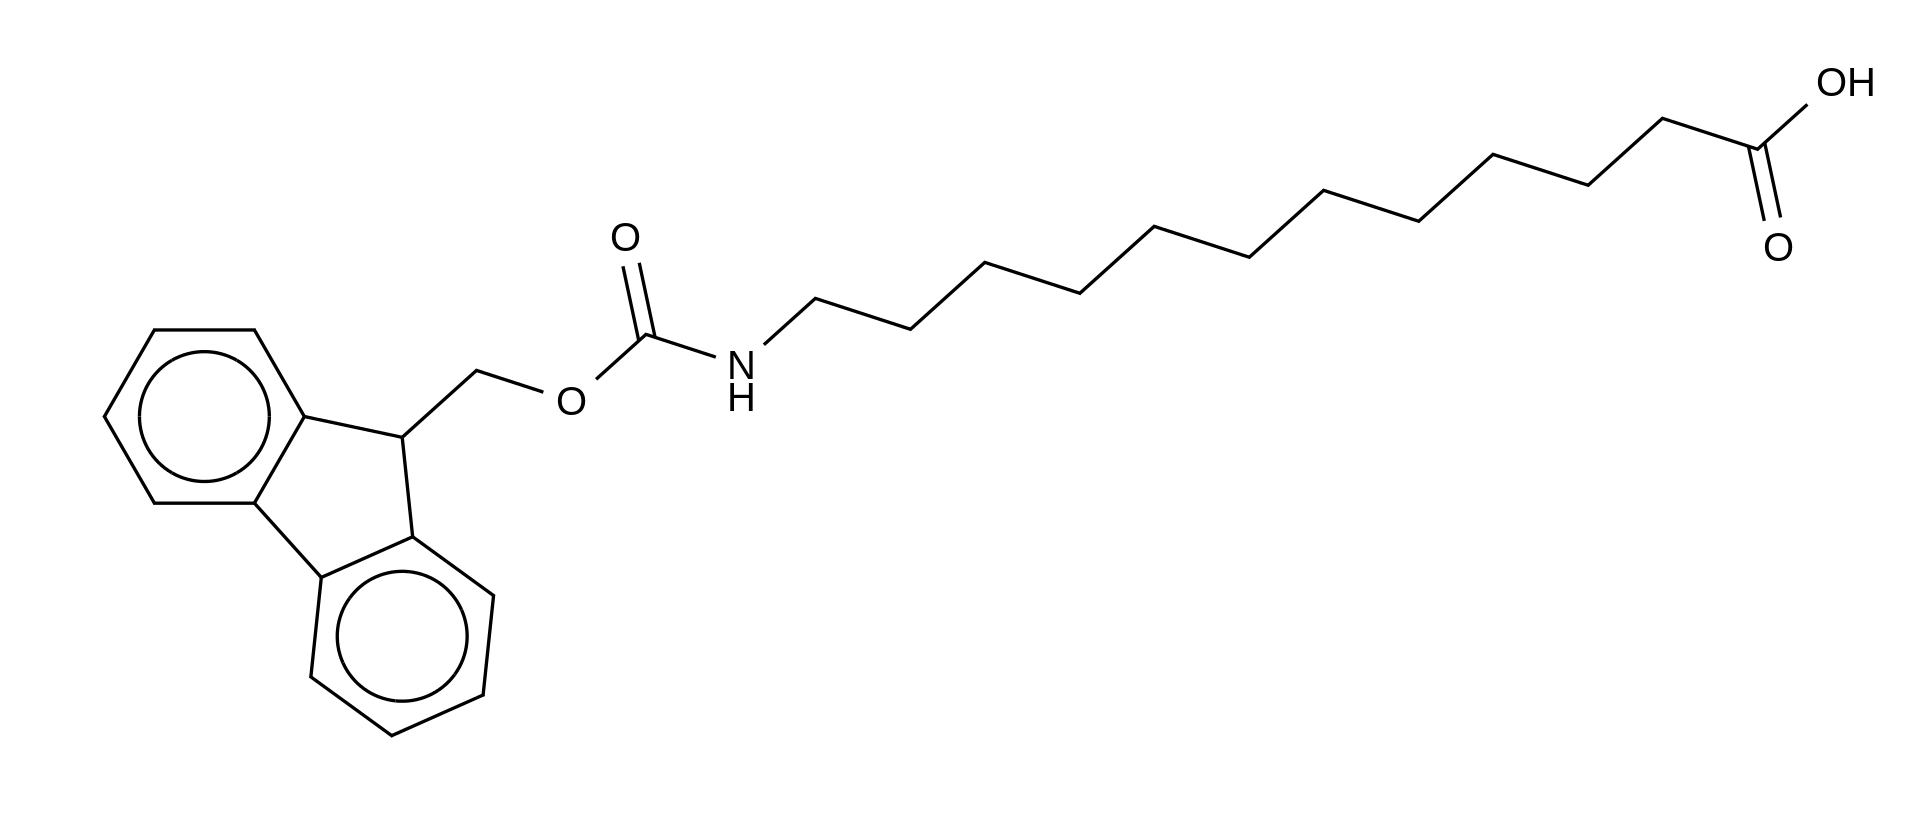 12-((((9H-Fluoren-9-yl)methoxy)carbonyl)amino)dodecanoic Acid